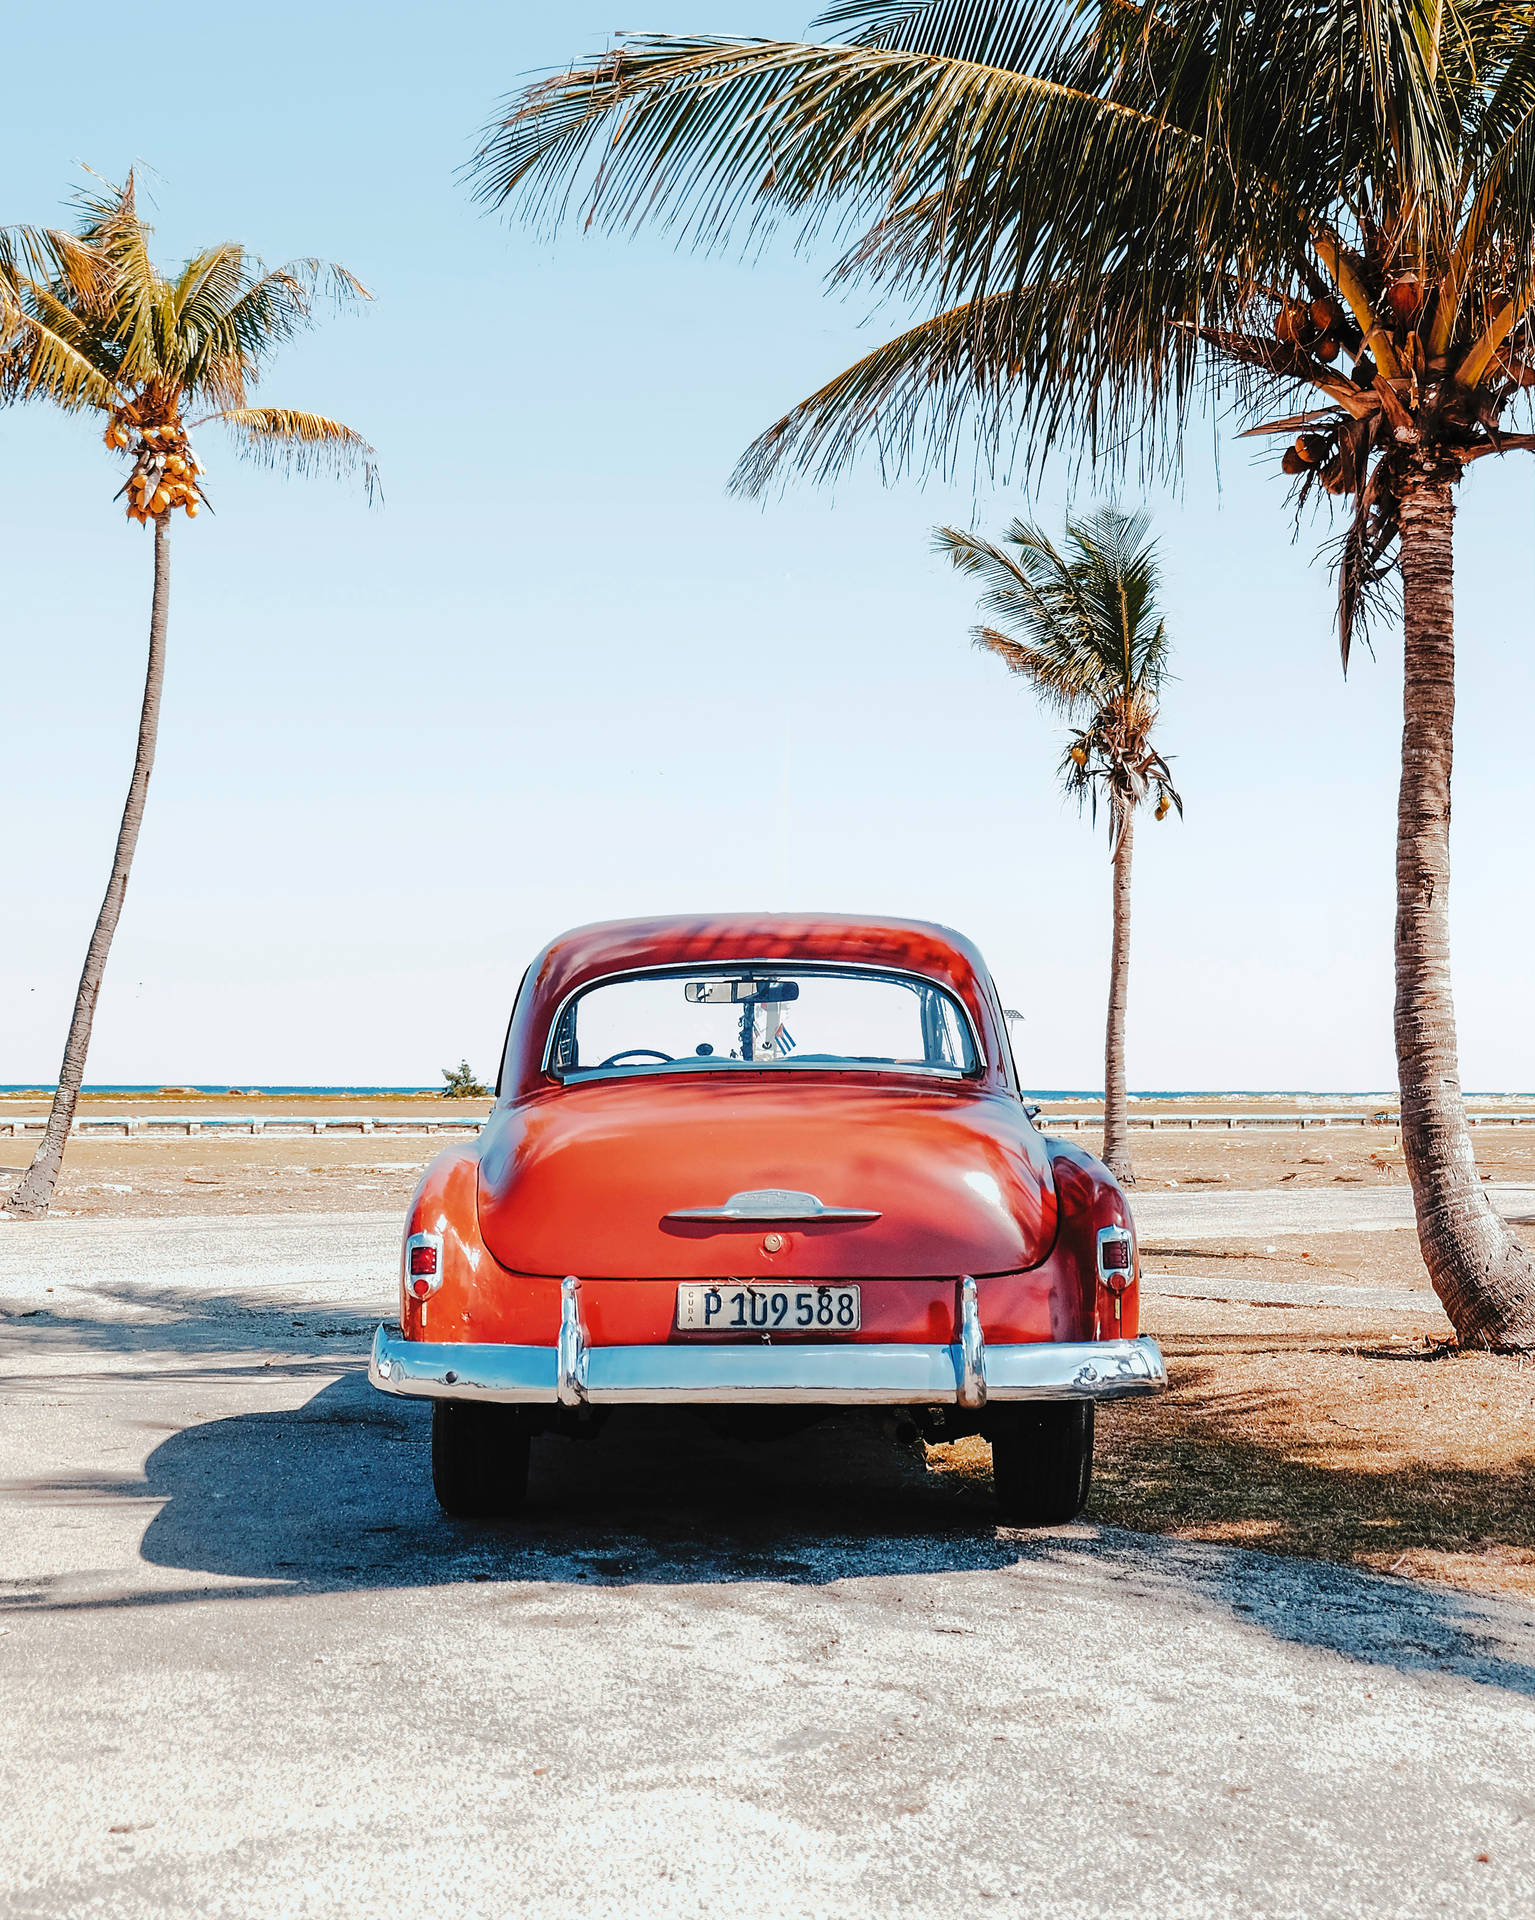 Red Classic Car In Cuba